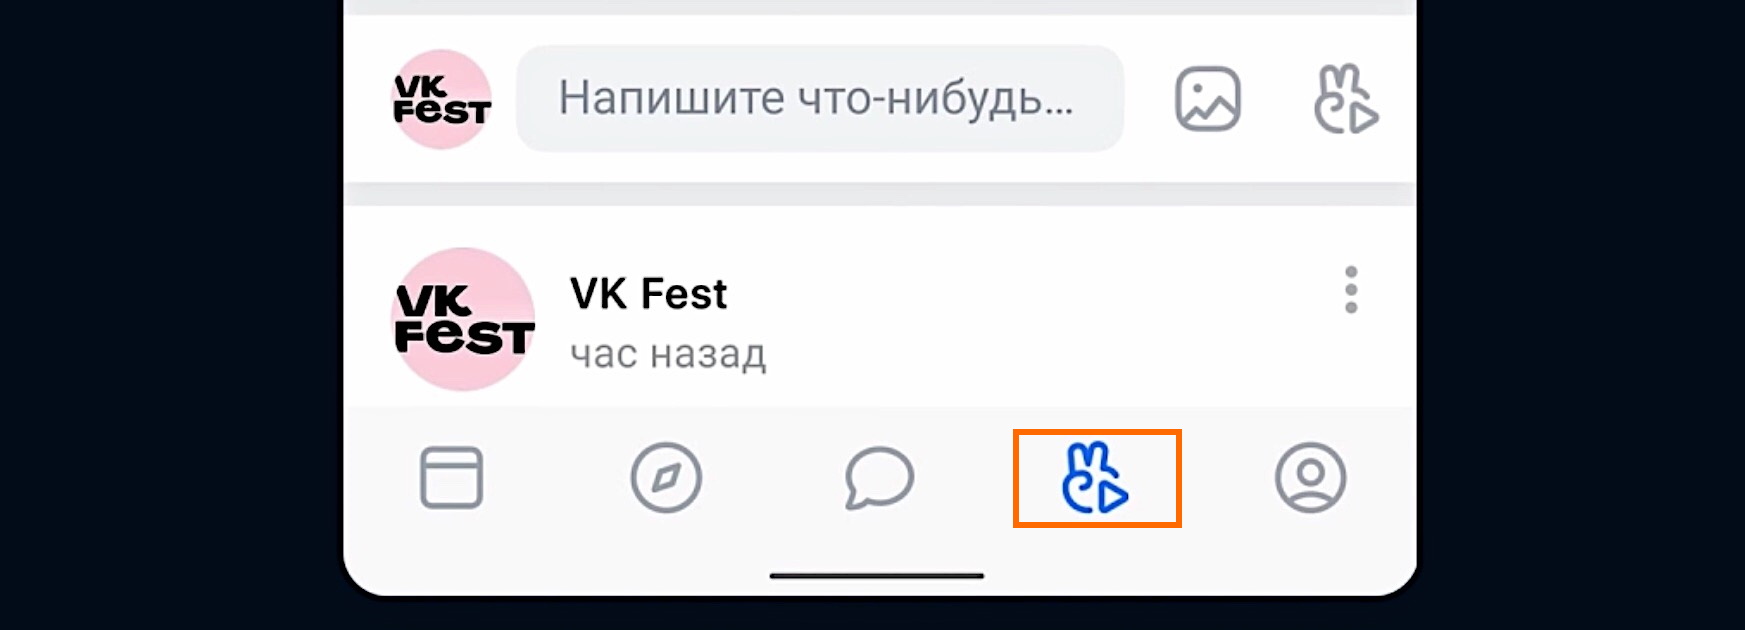 Значок «Клипы» на вкладке в ВКонтакте